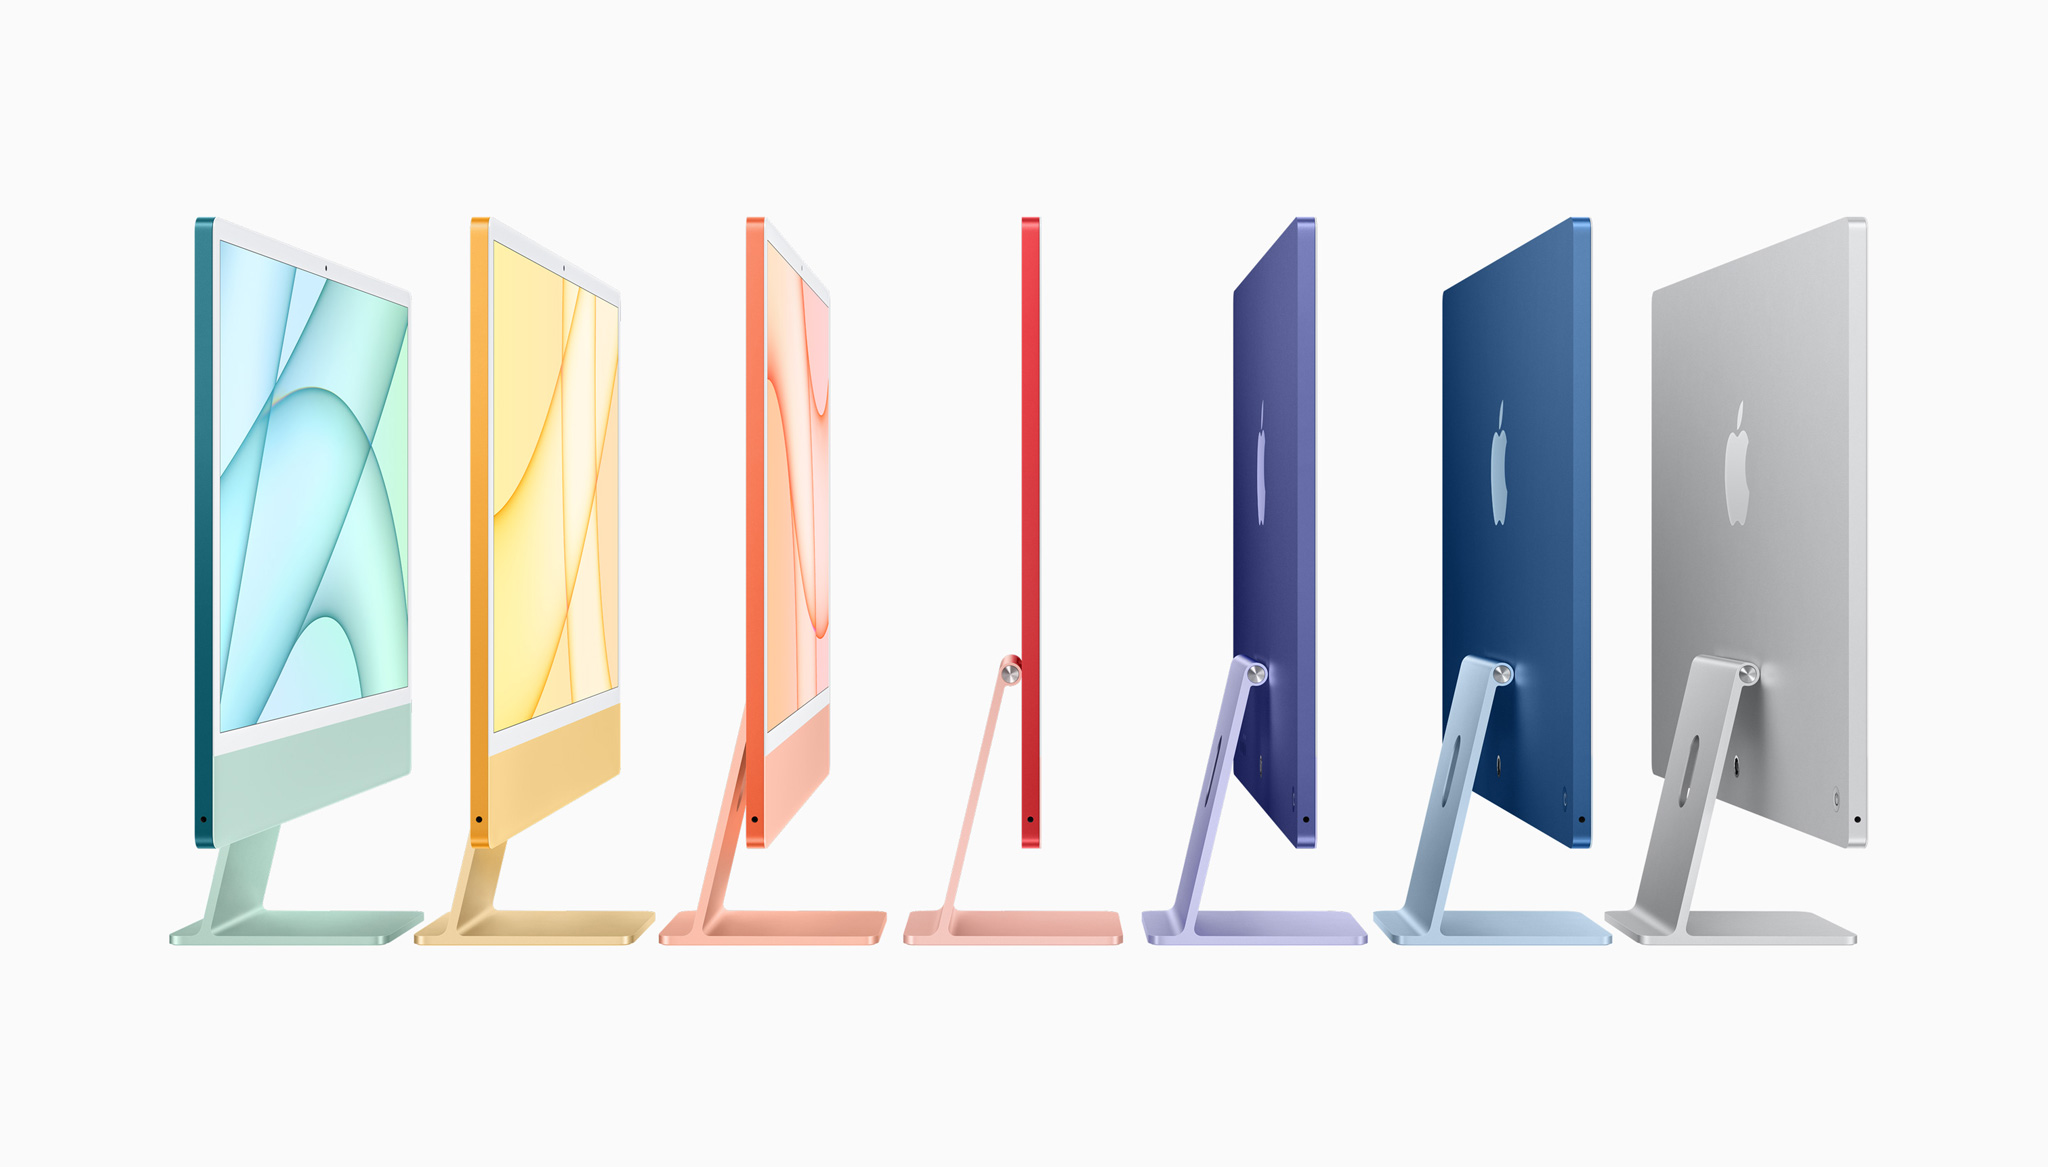 Apple iMac 24" chính thức: thiết kế mới tuyệt đẹp siêu mỏng, 7 màu sắc, chạy Apple M1